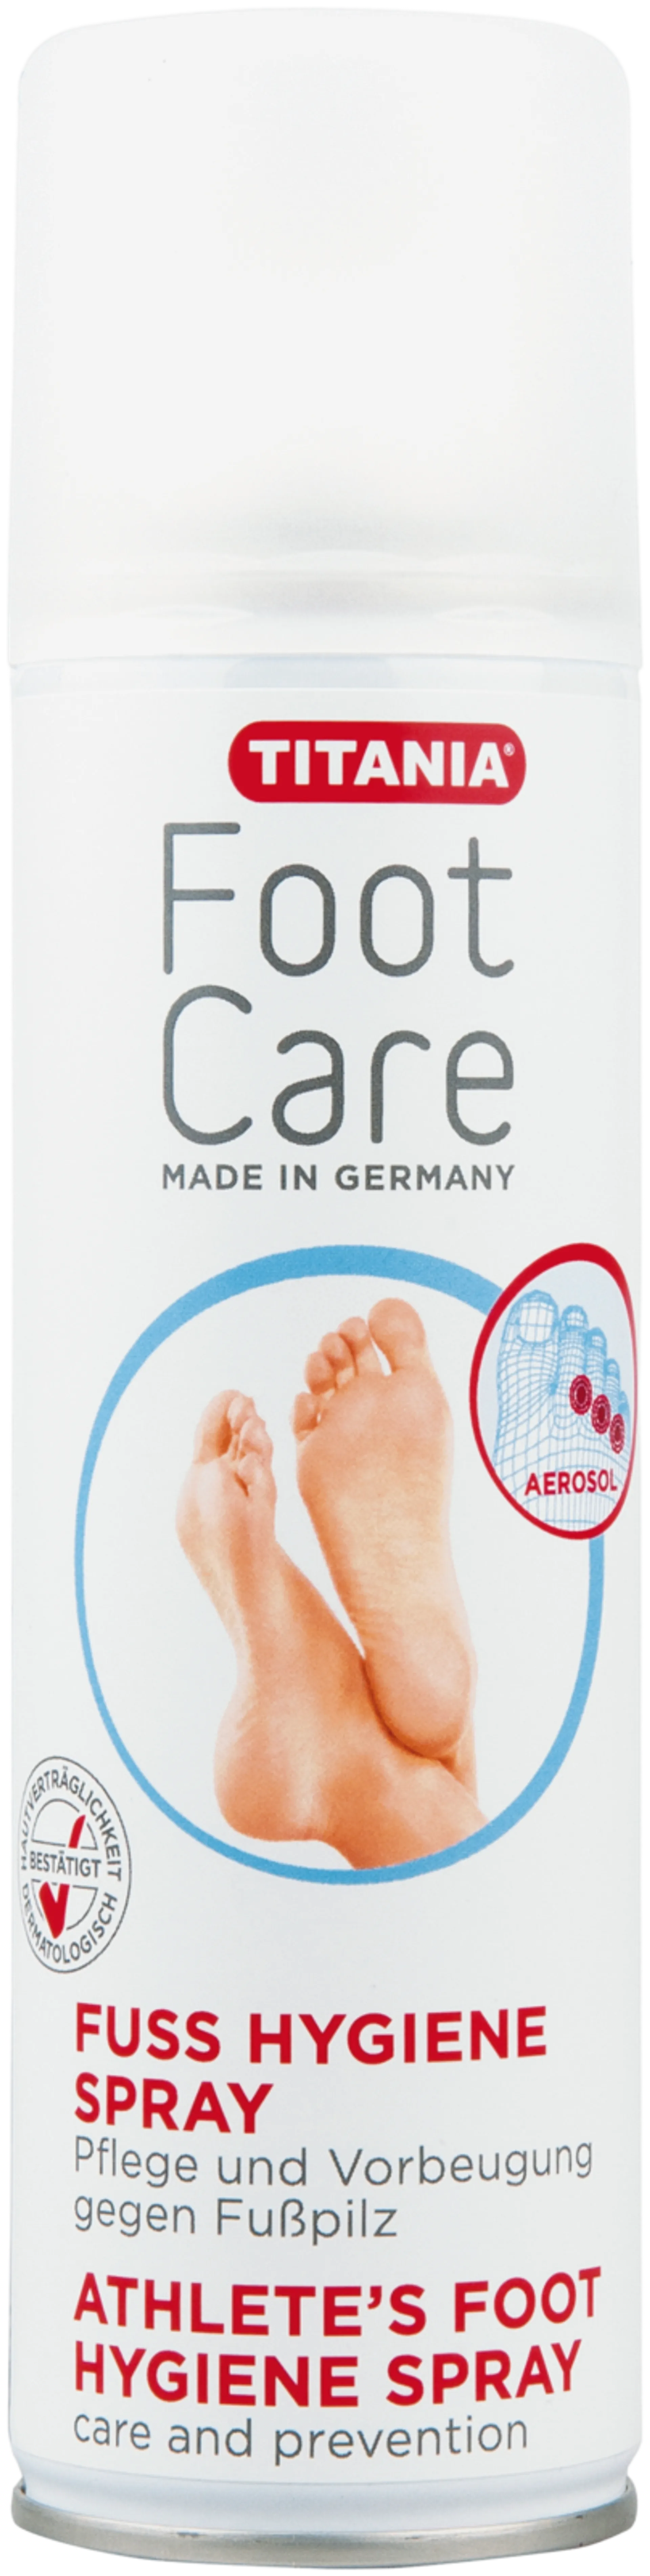 Titania Foot Care virkistävä jalkasuihke antaa jaloille kevyen ja raikkaan tuoksun ja pitää jalat raikkaana koko päivän. Jalkasuihke neutraloi hajuja ja vähentää kosteutta.